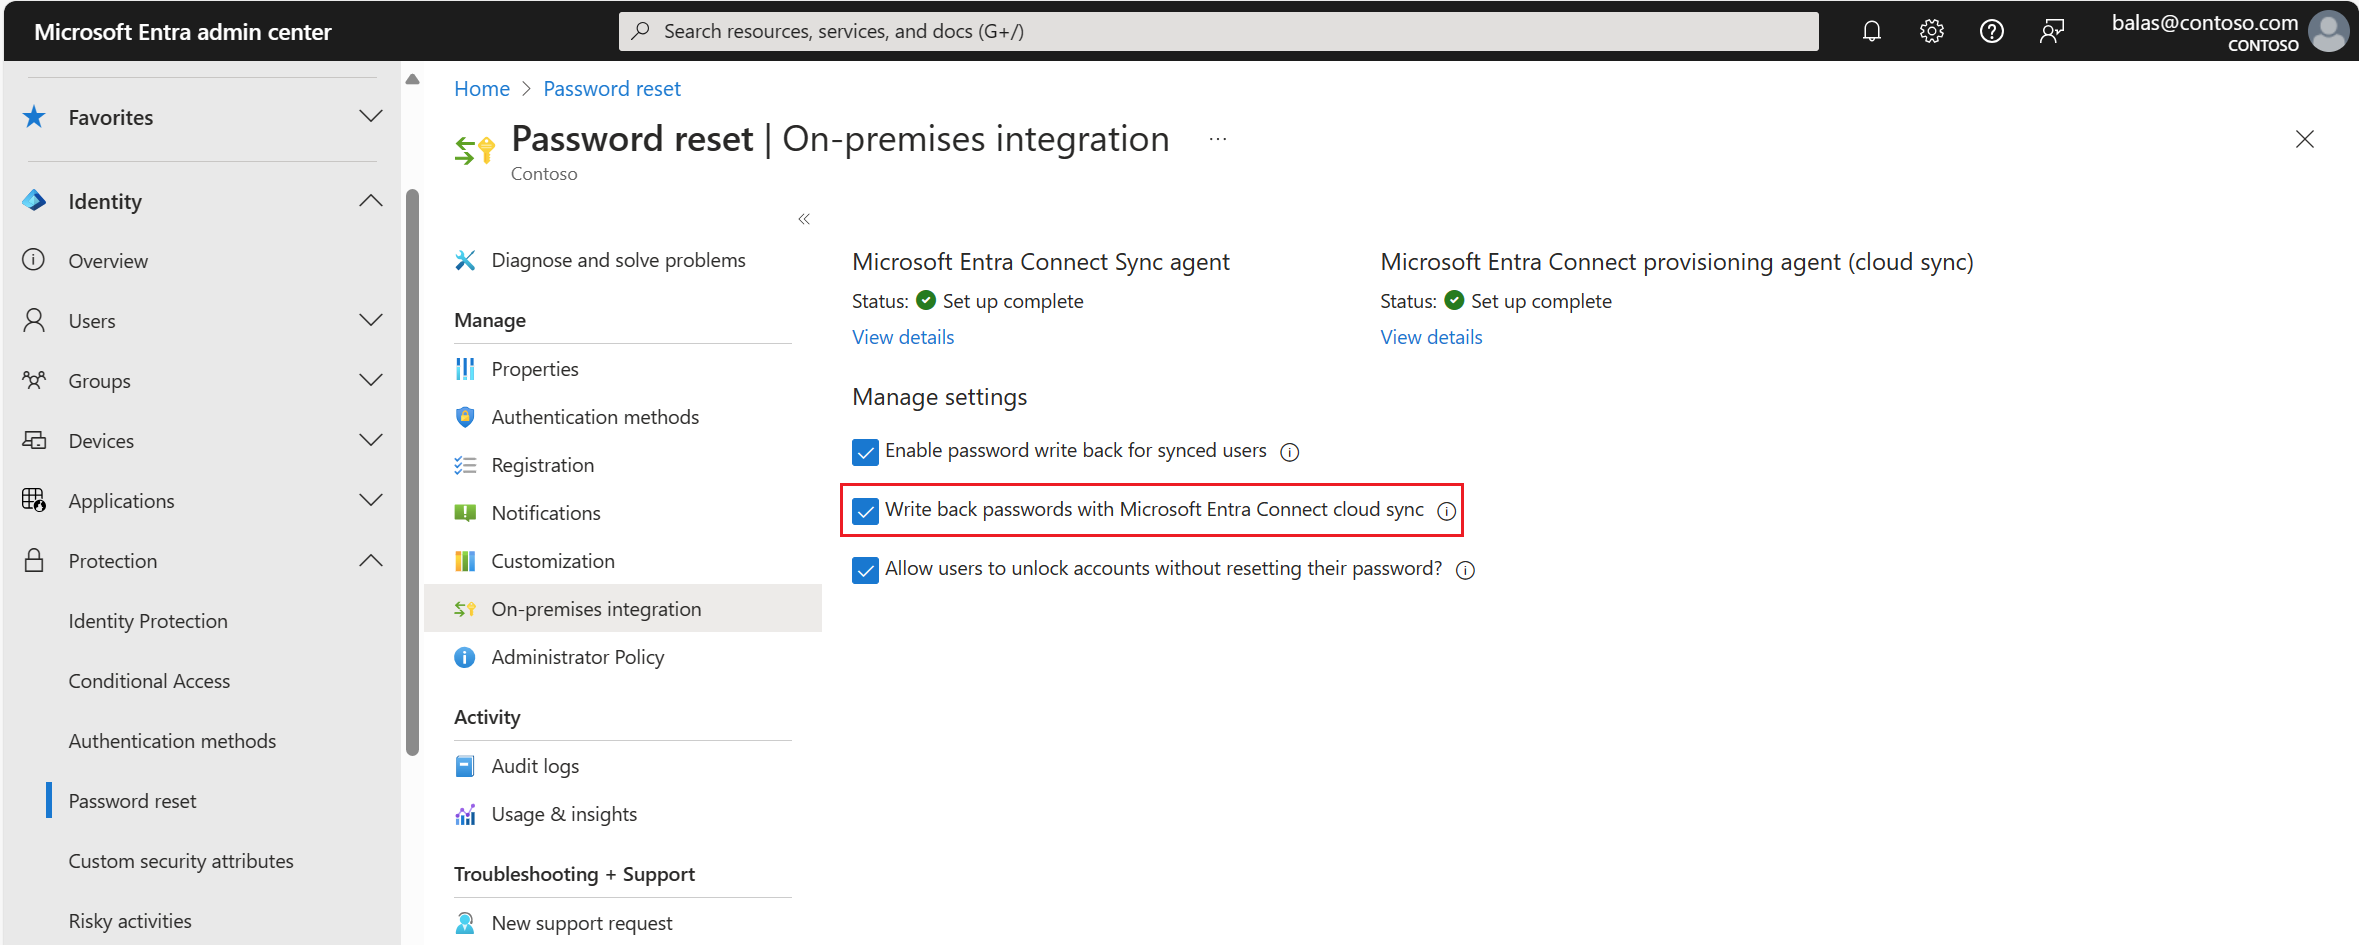 Capture d’écran de la réécriture du mot de passe activée pour Microsoft Entra ID dans une intégration locale.